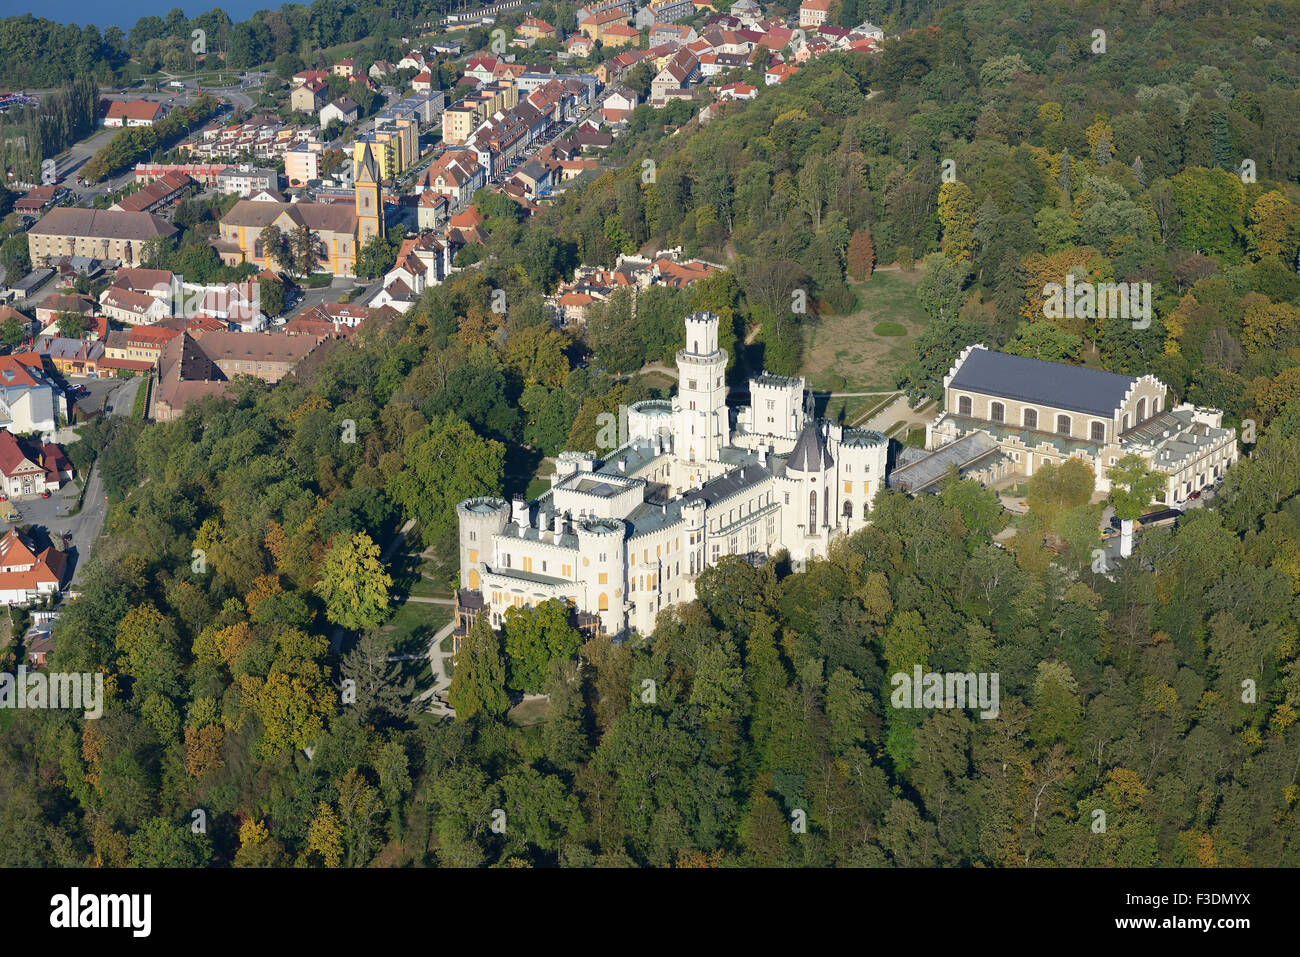 VUE AÉRIENNE.Le château de Hluboká donne sur la ville médiévale de Hluboká nad Vltavou.Bohême, République tchèque. Banque D'Images